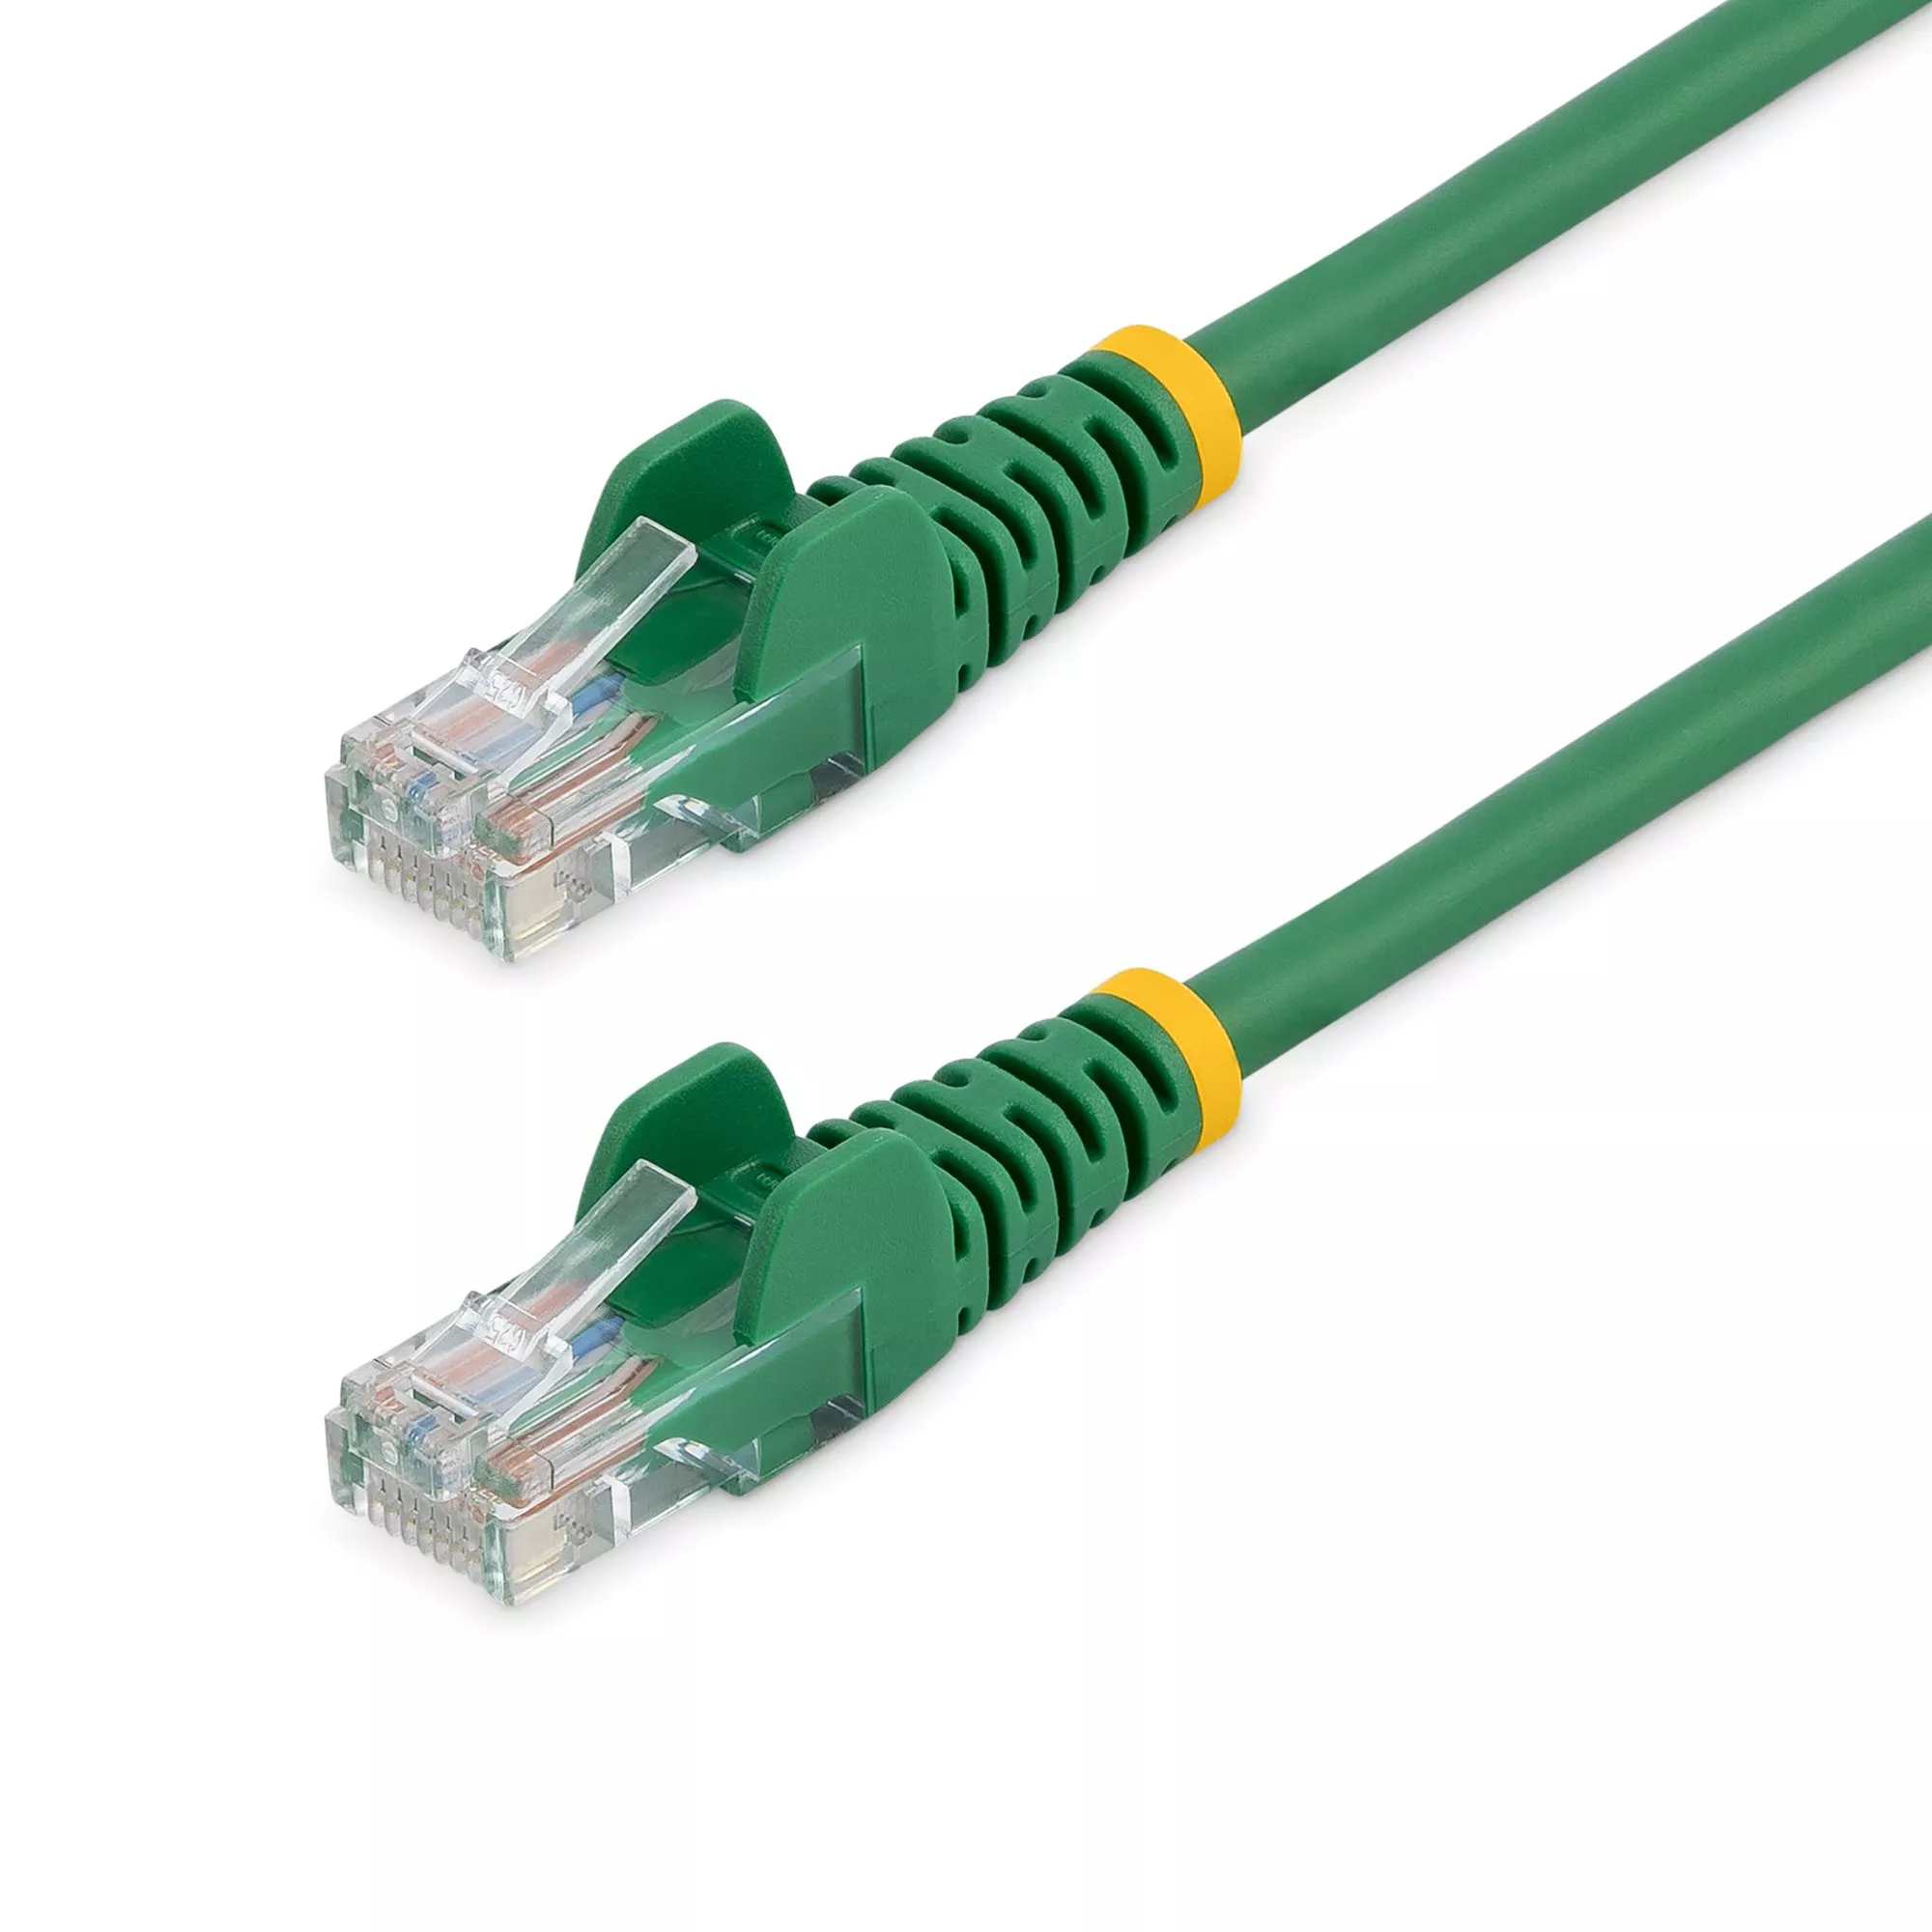 Achat StarTech.com Câble réseau Cat5e sans crochet de 5 m - Vert et autres produits de la marque StarTech.com